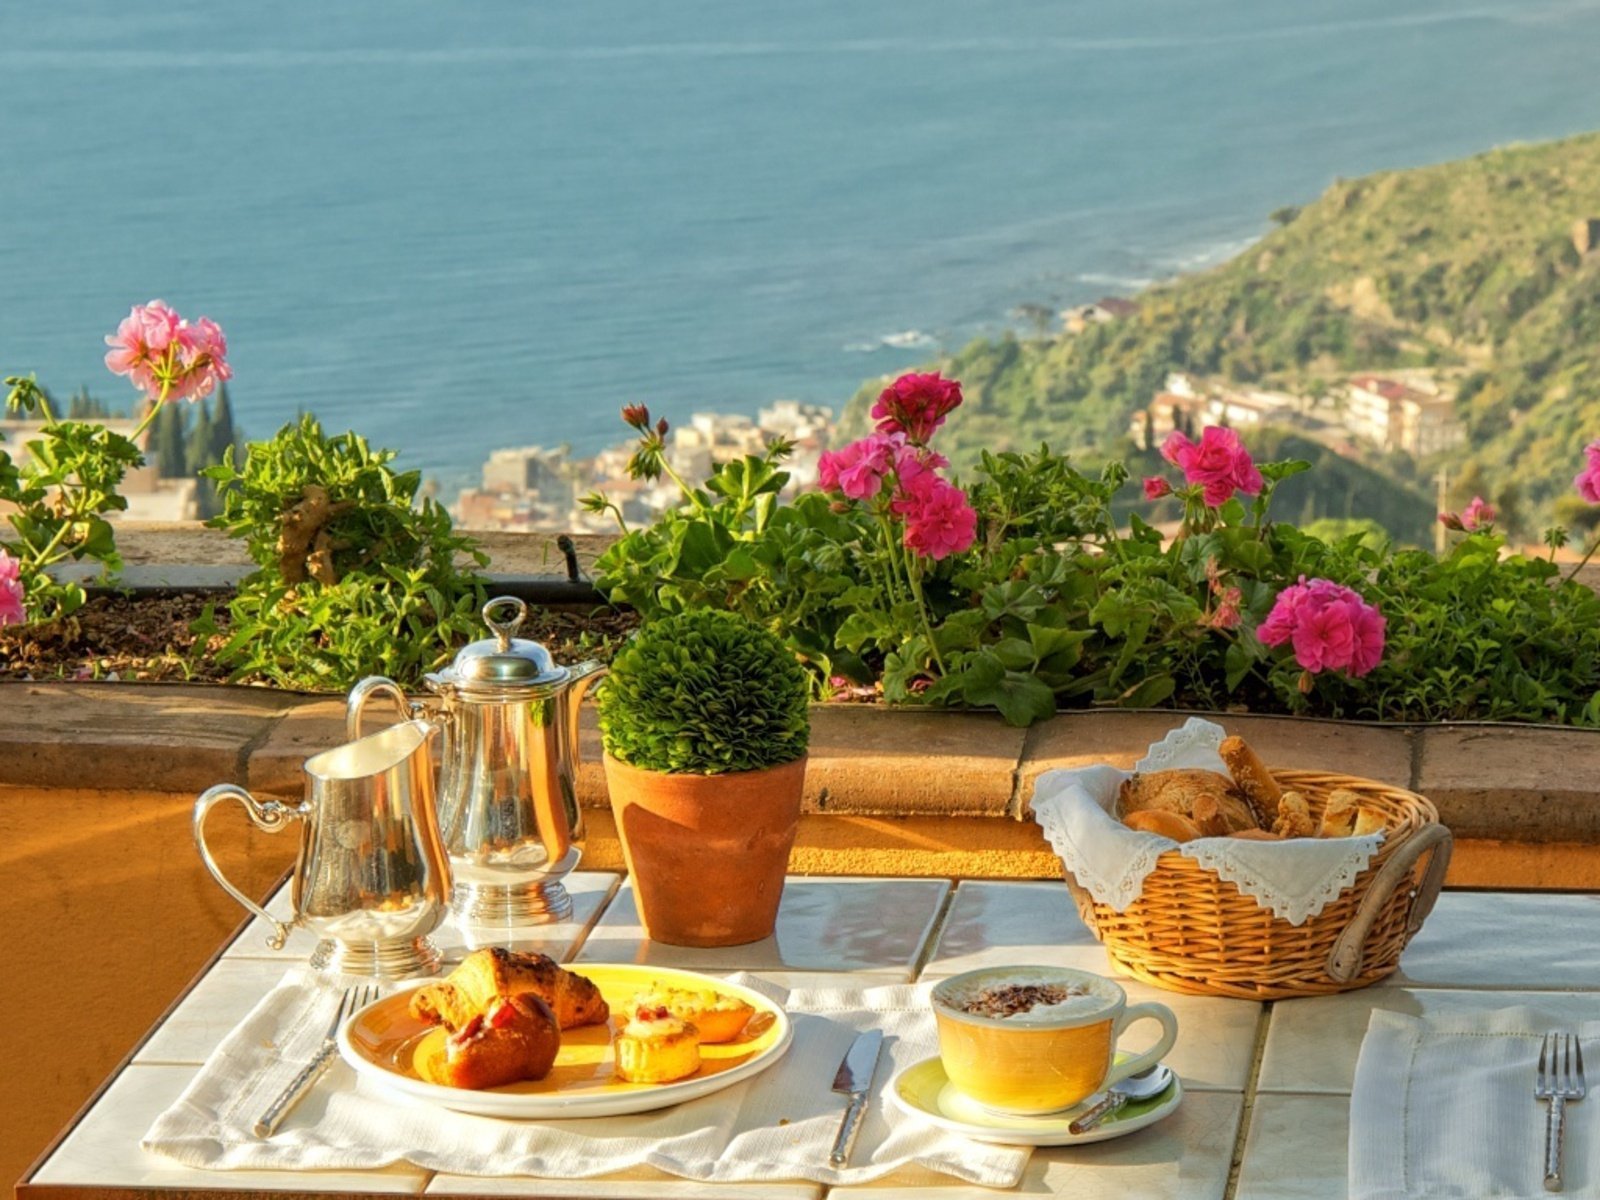 Беречь завтрак. Завтрак цветы. Завтрак с цветами. Красивый завтрак. Терраса у моря.